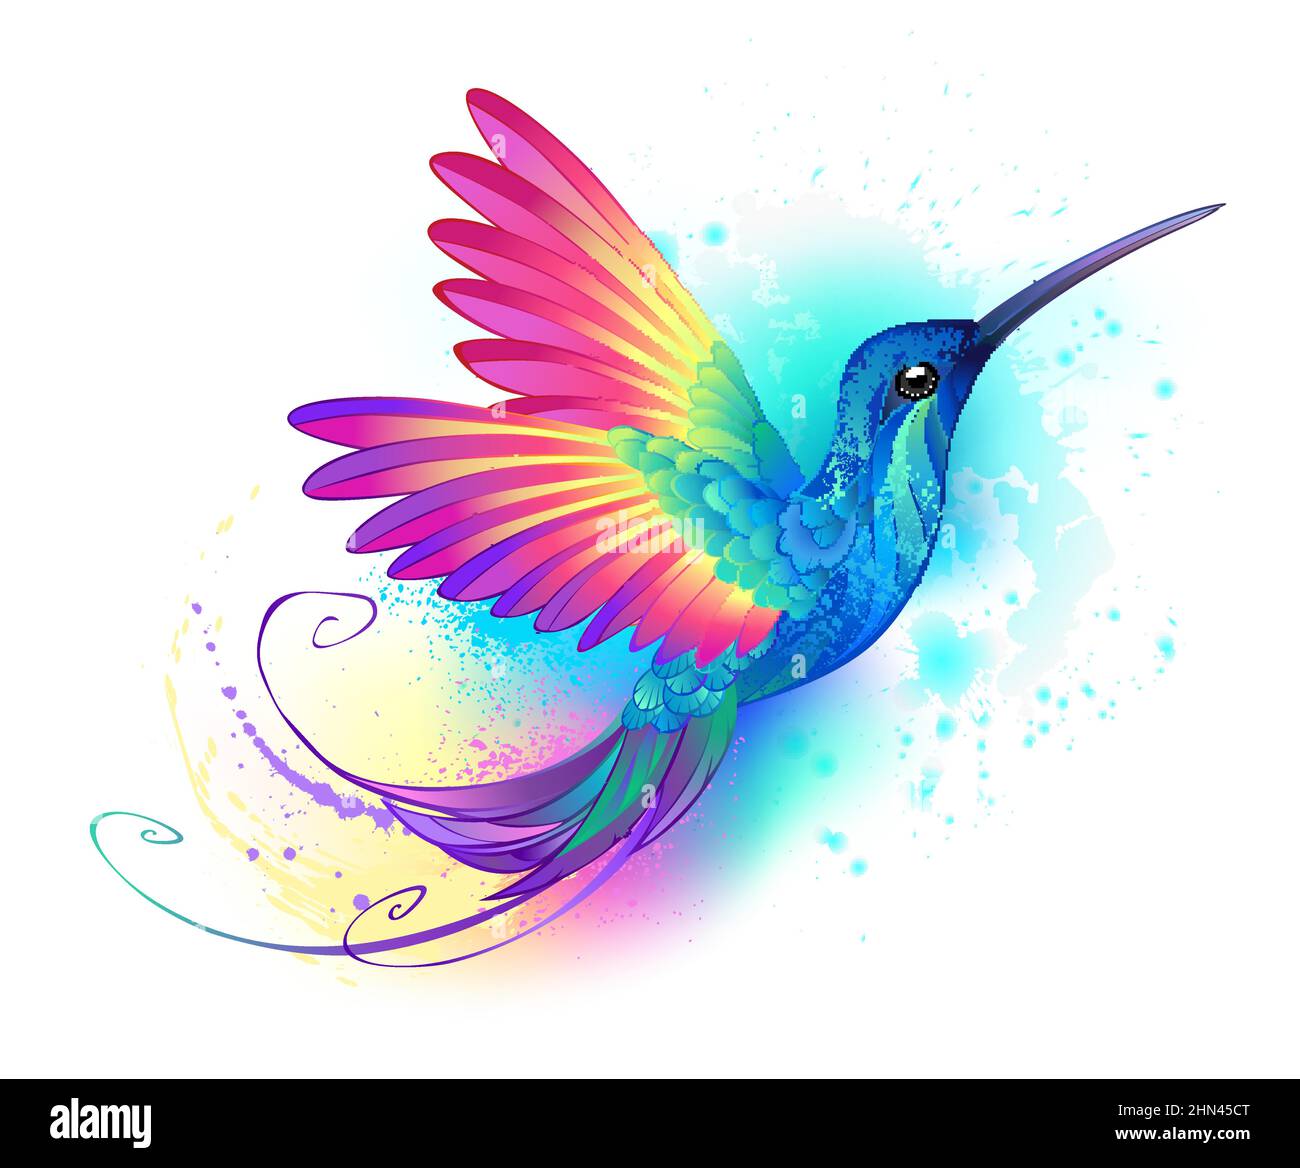 Brillante, iridiscente, exótico colibrí sobre fondo blanco, pintado sobre con pintura multicolor, acuarela. Colibrí arco iris. Ilustración del Vector